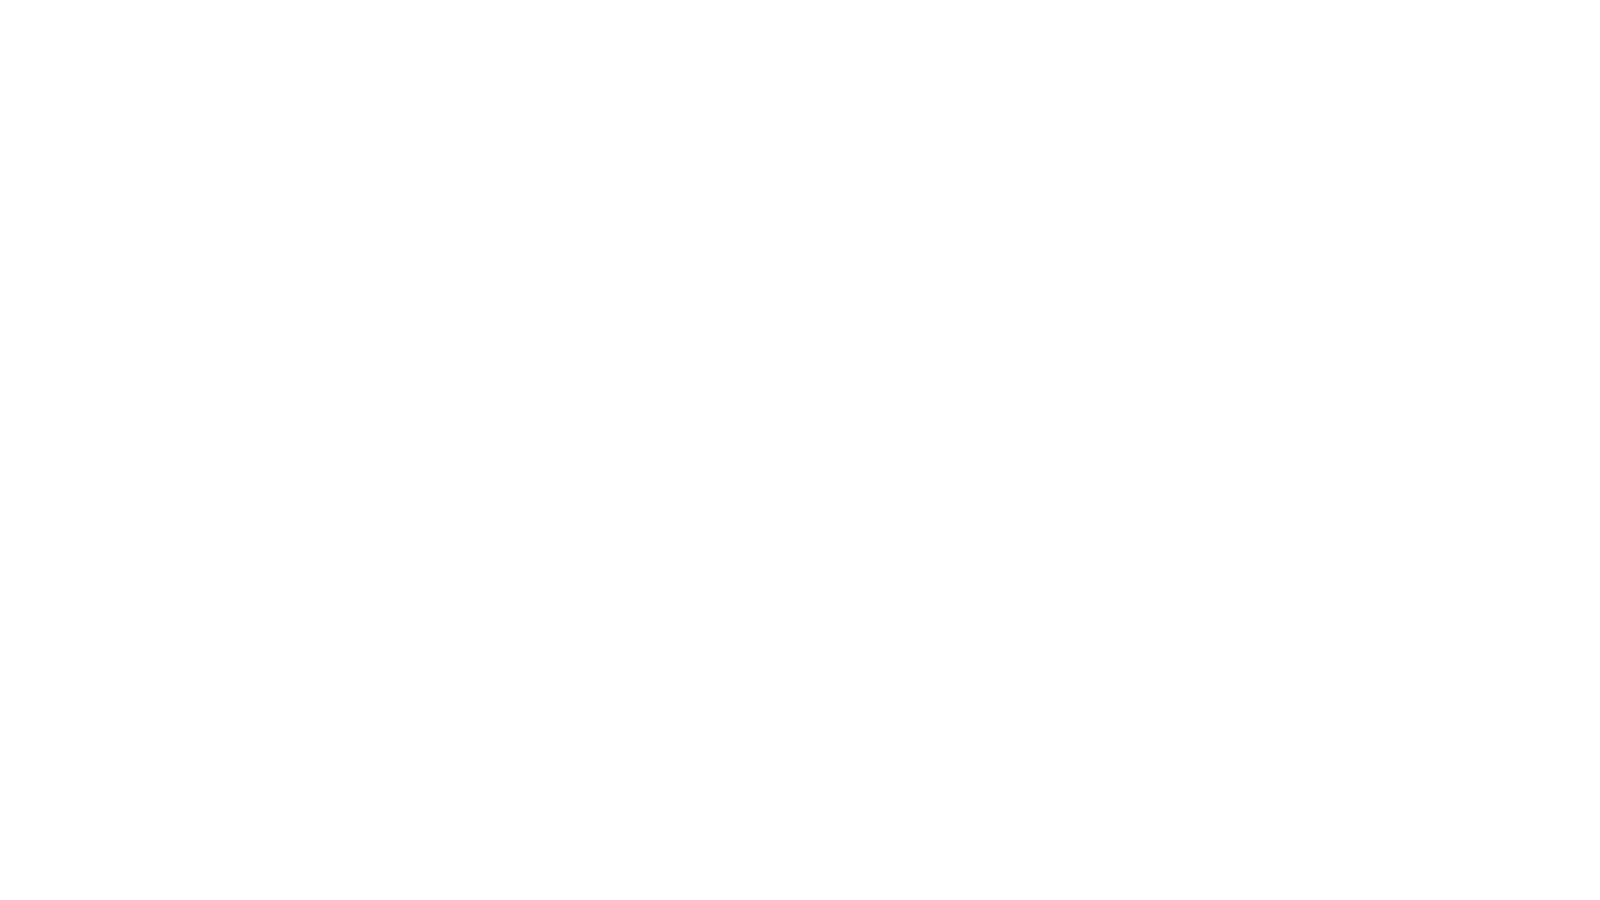 Видео-опрос о красоте в честь Международного Дня матери 27 ноября.
Атоми вместе с участниками опроса поздравили любимых мам, порадовав их антивозрастной косметикой Атоми (набор Абсолют СеллАктив, Морские Патчи для глаз и Терапия для рук)

Южнокорейская компания Atomy (Атоми) предлагает качественную продукцию для здоровья, красоты и дома. Основанная в 2009 г. компания Атоми на данный момент насчитывает 23 действующих филиала в различных странах. Компания работает в России с 2018 г. Потребителями продукции Атоми в России и Беларуси стали уже стали более 300 000 человек.

Официальный сайт Атоми Россия – https://www.atomy.ru/
Клиентский портал – https://helpdesk.atomydoc.ru/
Ch.Атоми – https://ch.atomy.com/